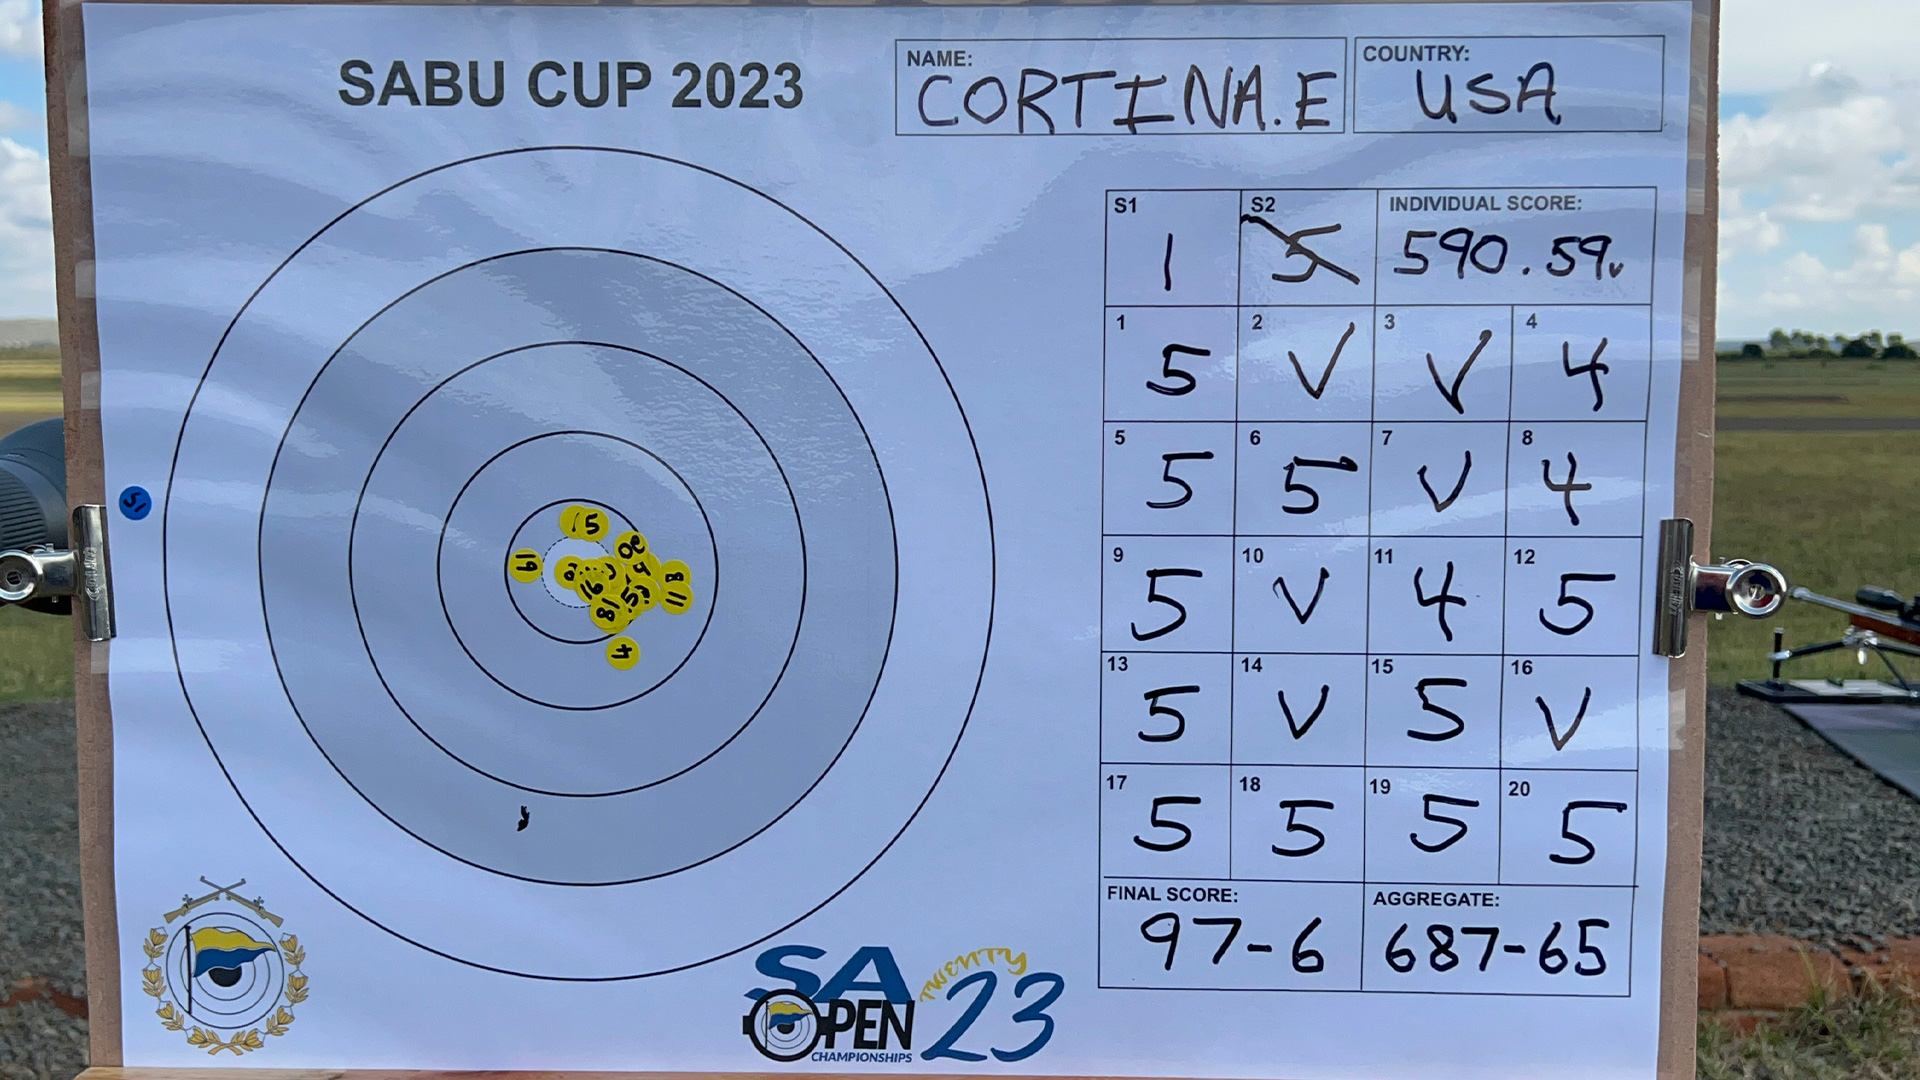 Erik Cortina target